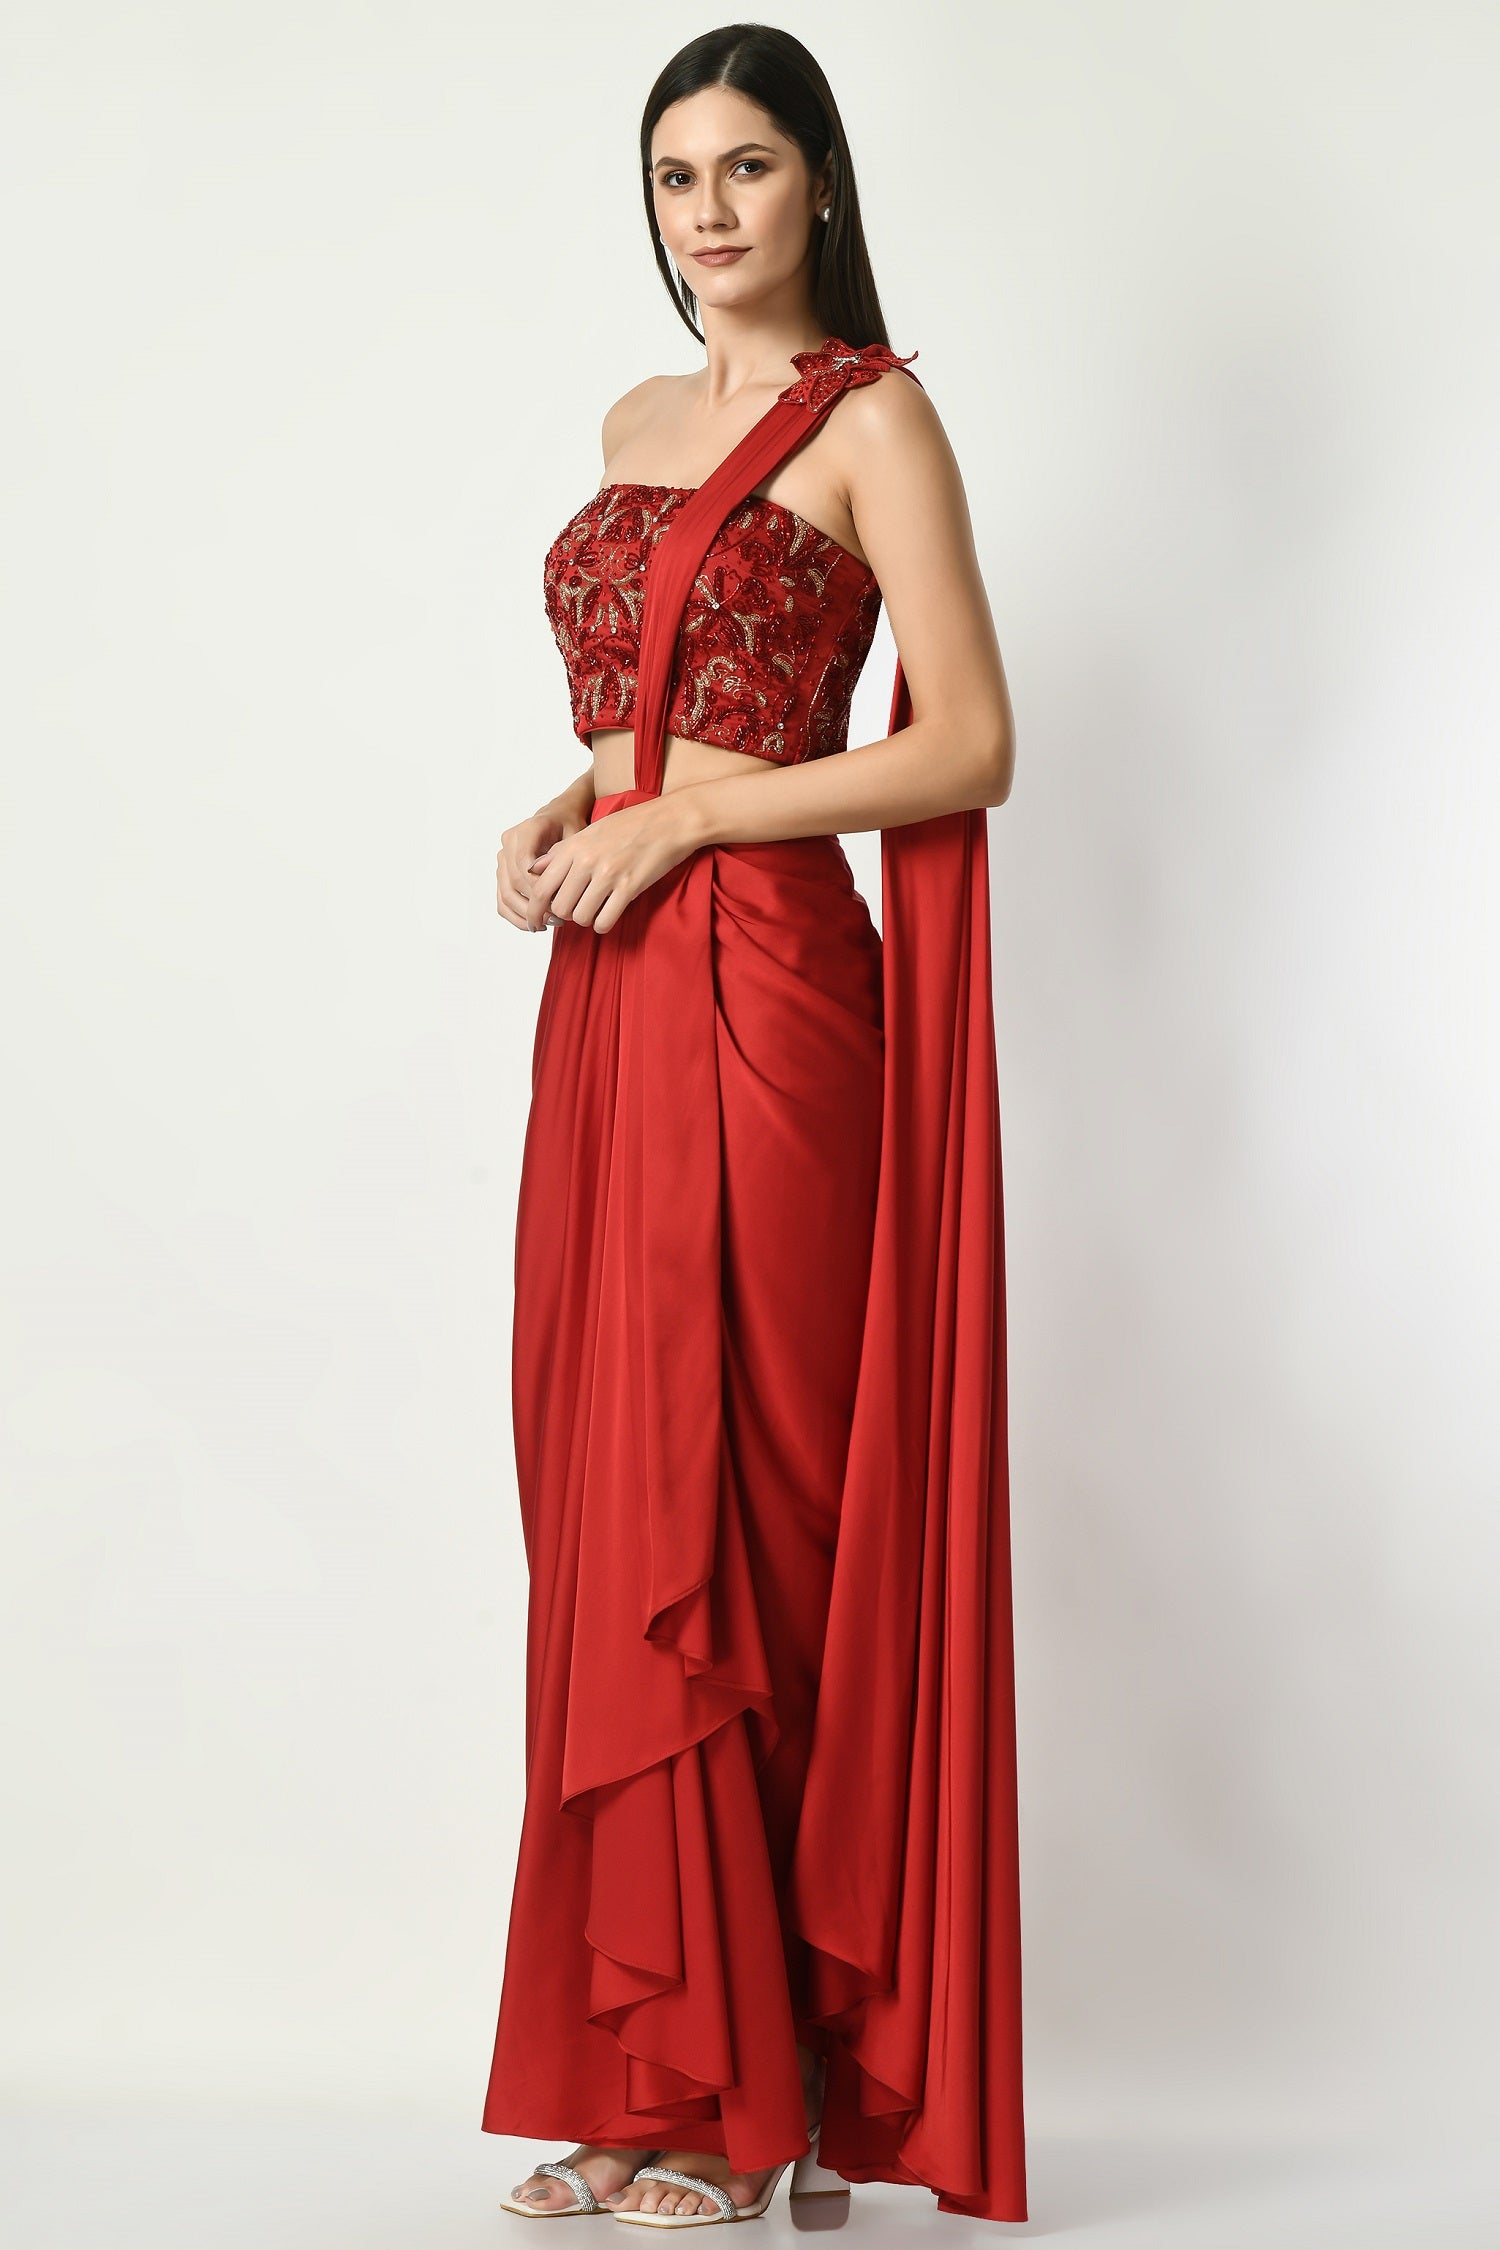 Coral Red Drape Gown Saree – Miku Kumar Official